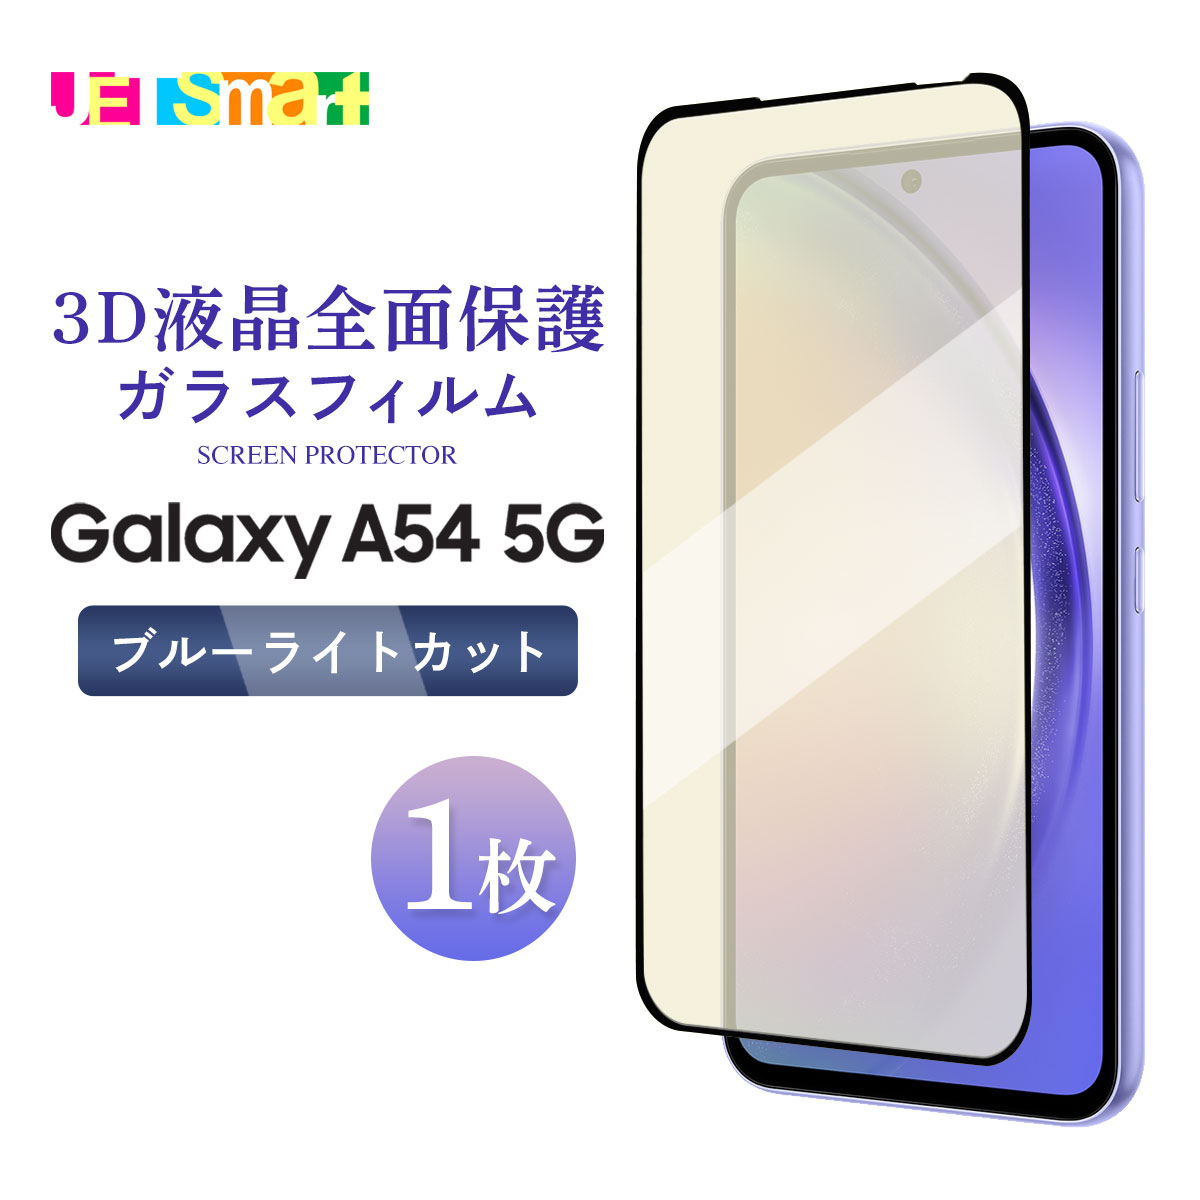 Galaxy A54 5G SCG21 SC-53D KXtB 1 یV[g tی 3DtSʕی t`܂ u[CgJbg KX dx9H N[i[V[gt MNV[ G[tBteBtH[ t@CuW[ Galaxy A54 5G SC-53D docomo hR Galaxy A54 5G au G[[